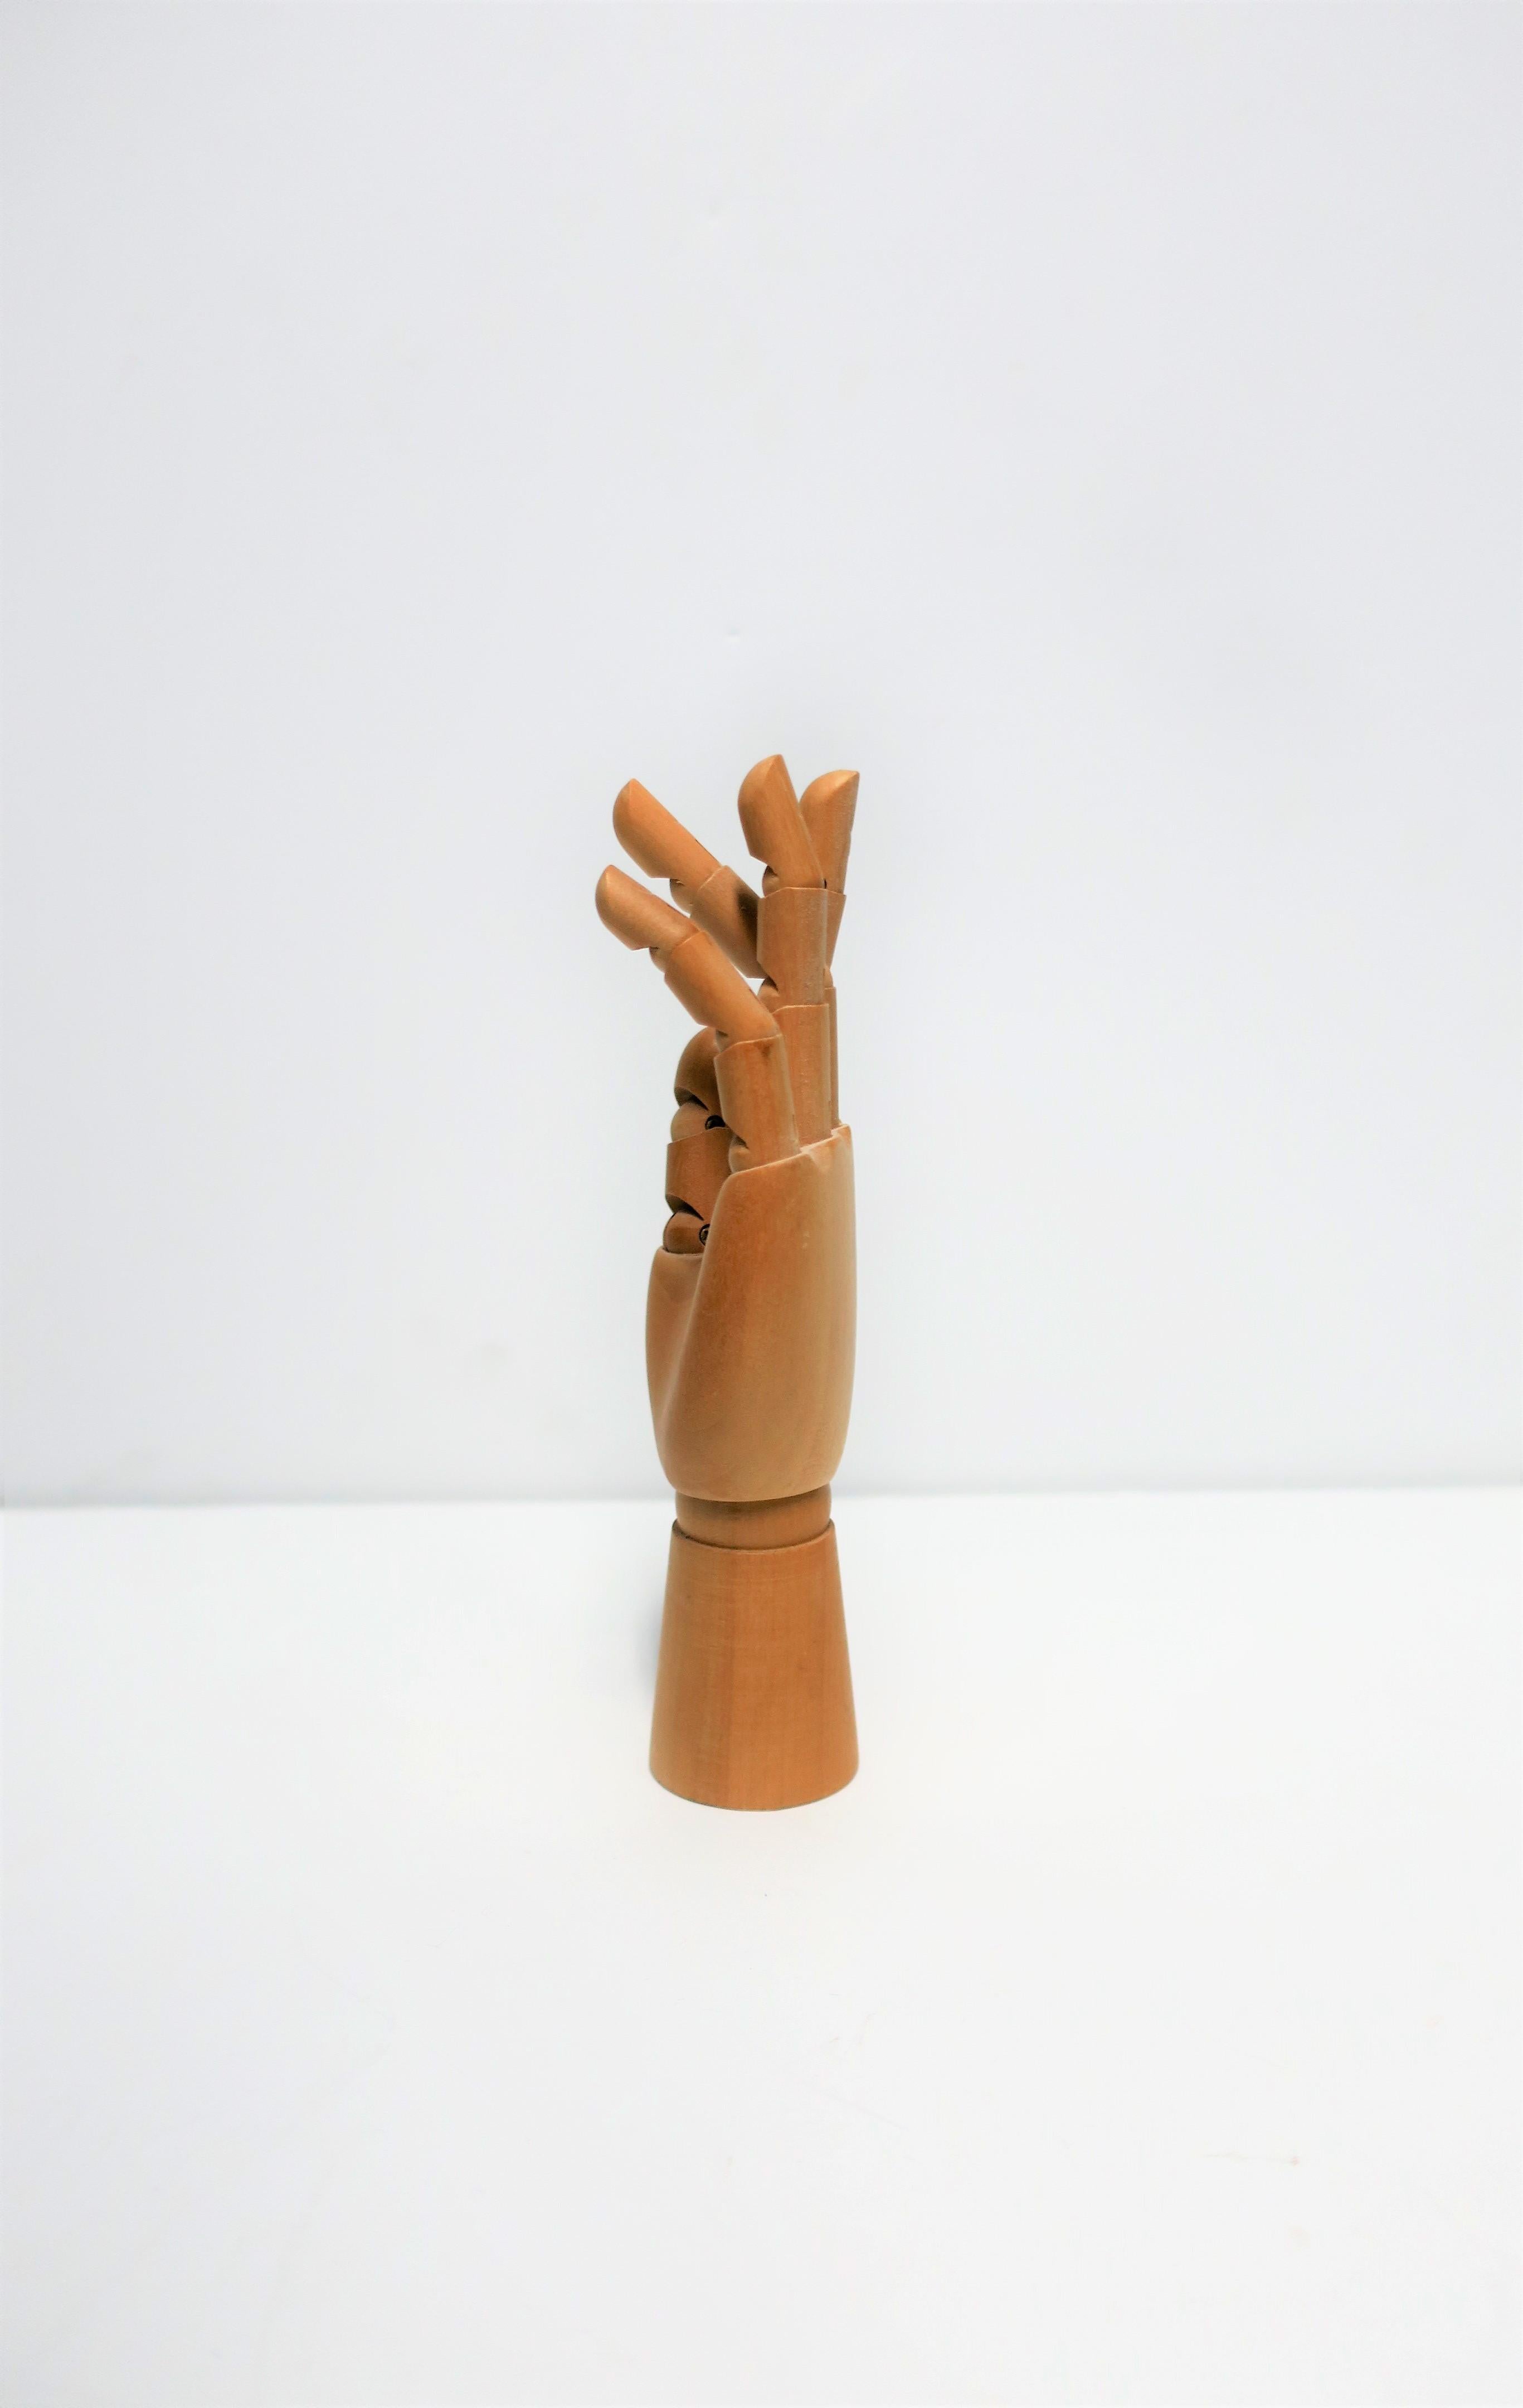 Articulating Wood Hand Sculpture Piece 3